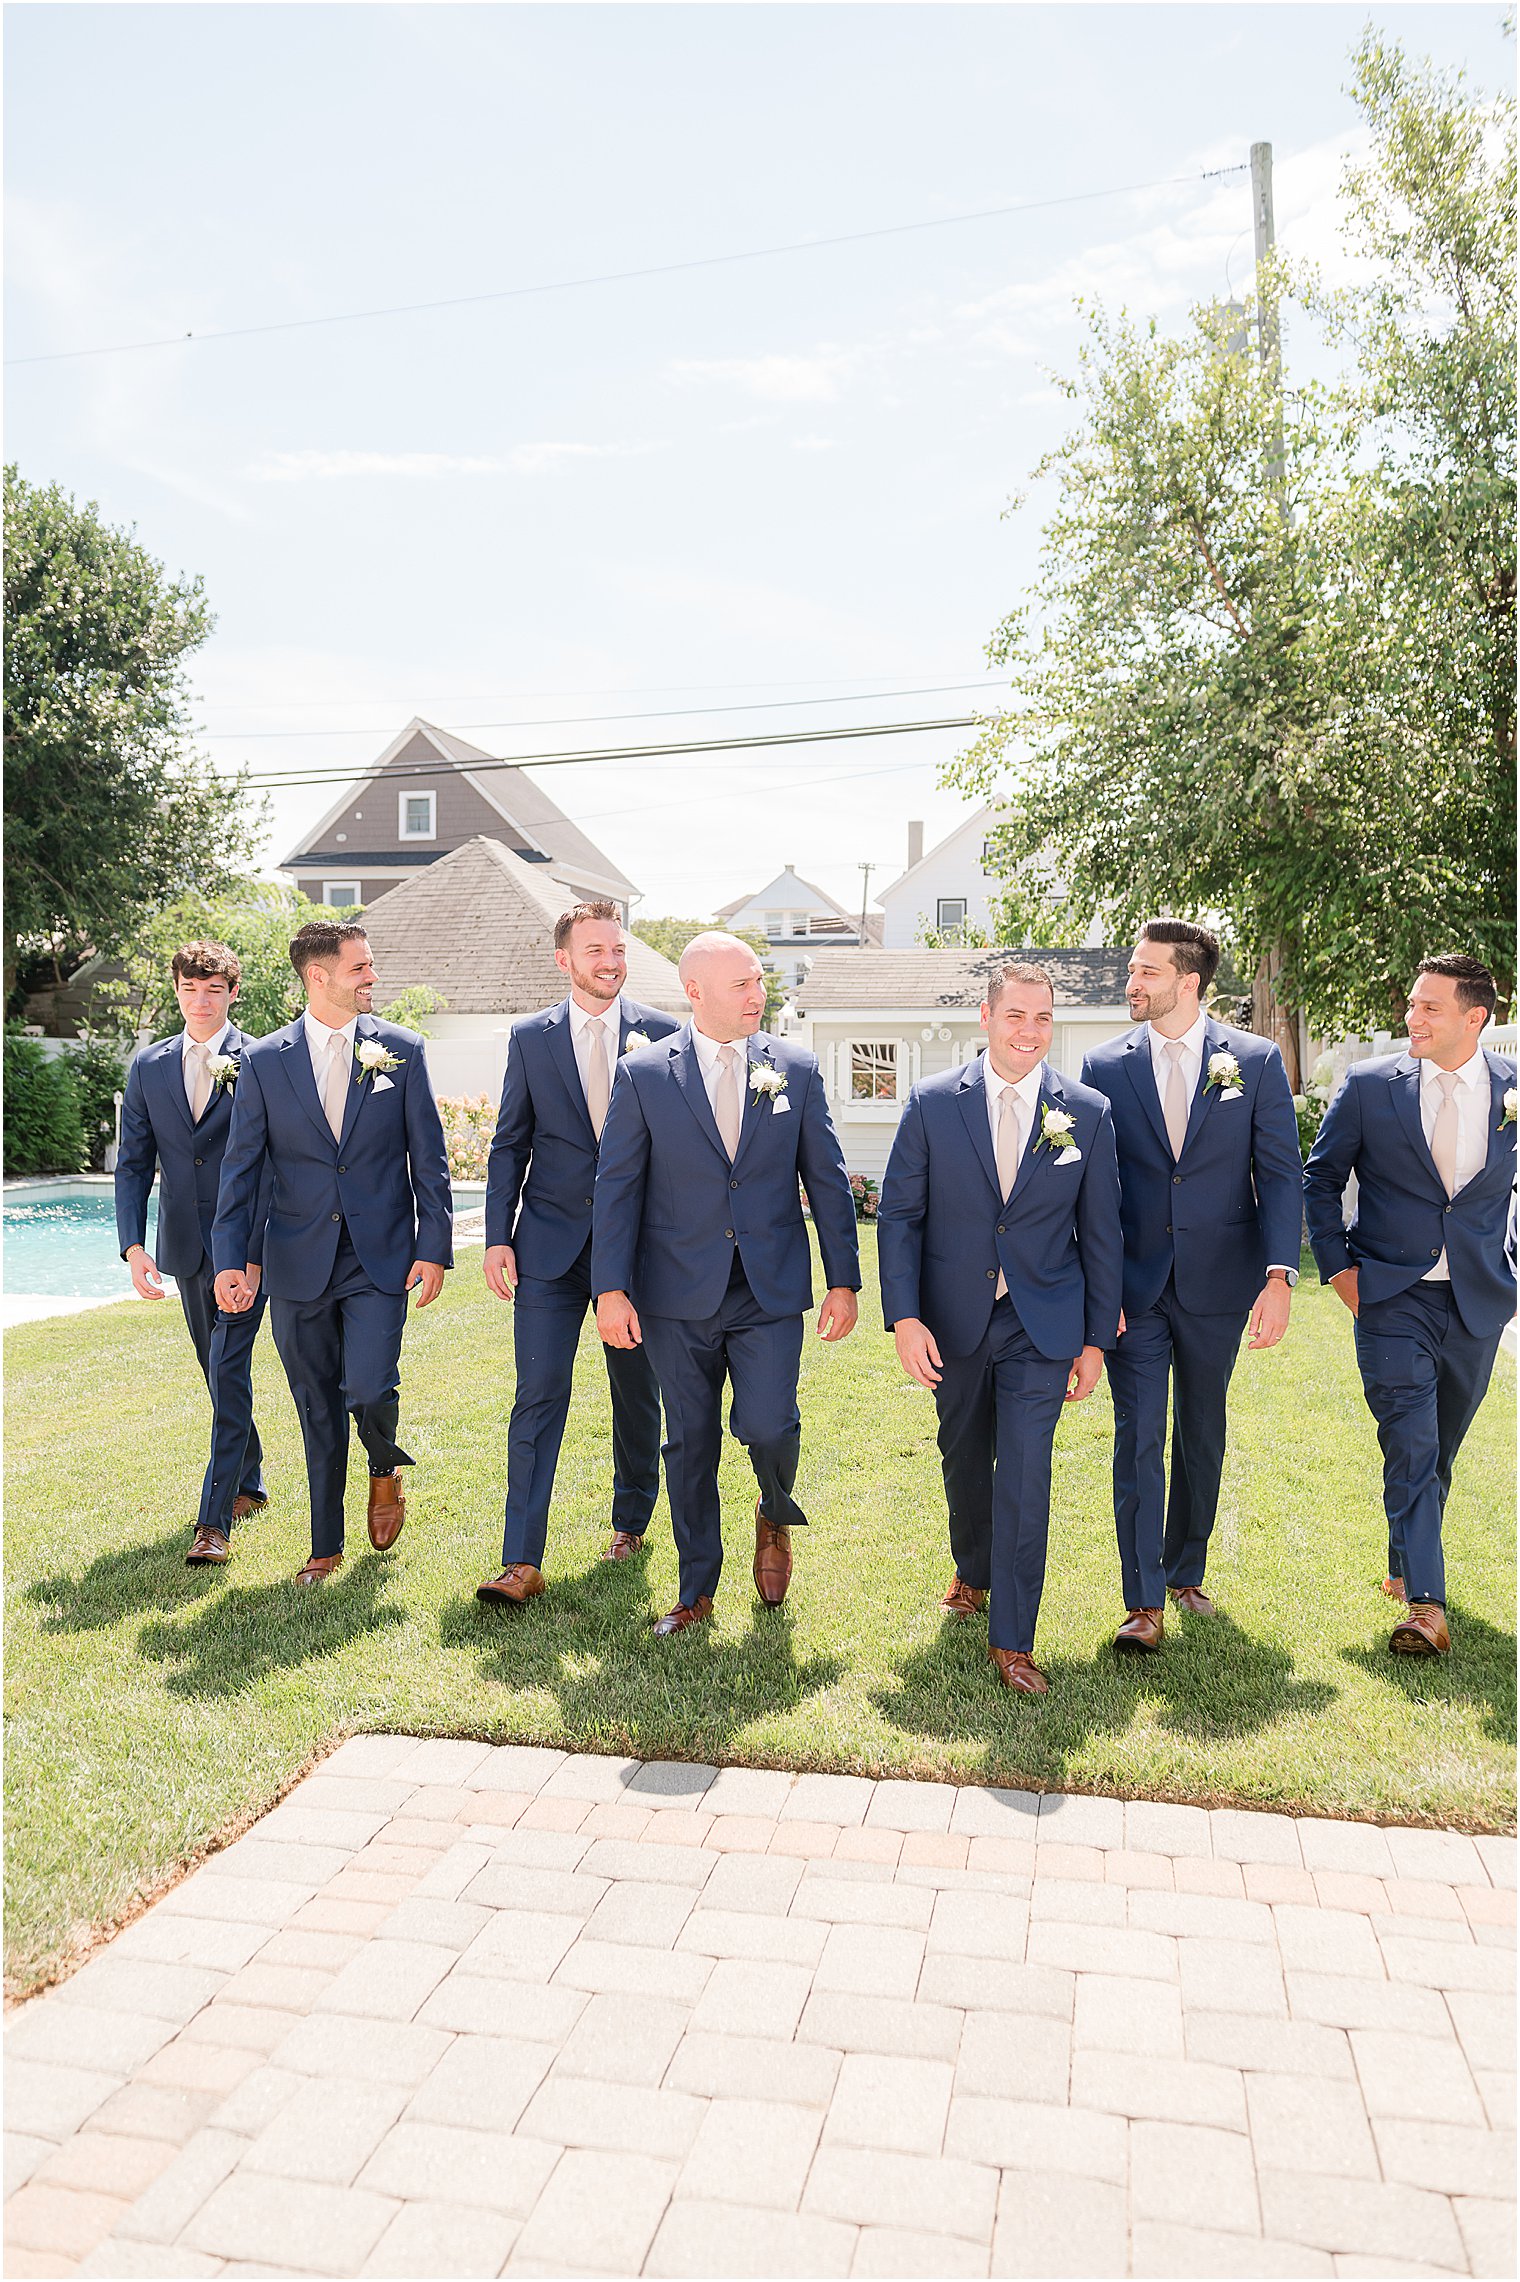 groom walks with groomsmen in navy suits